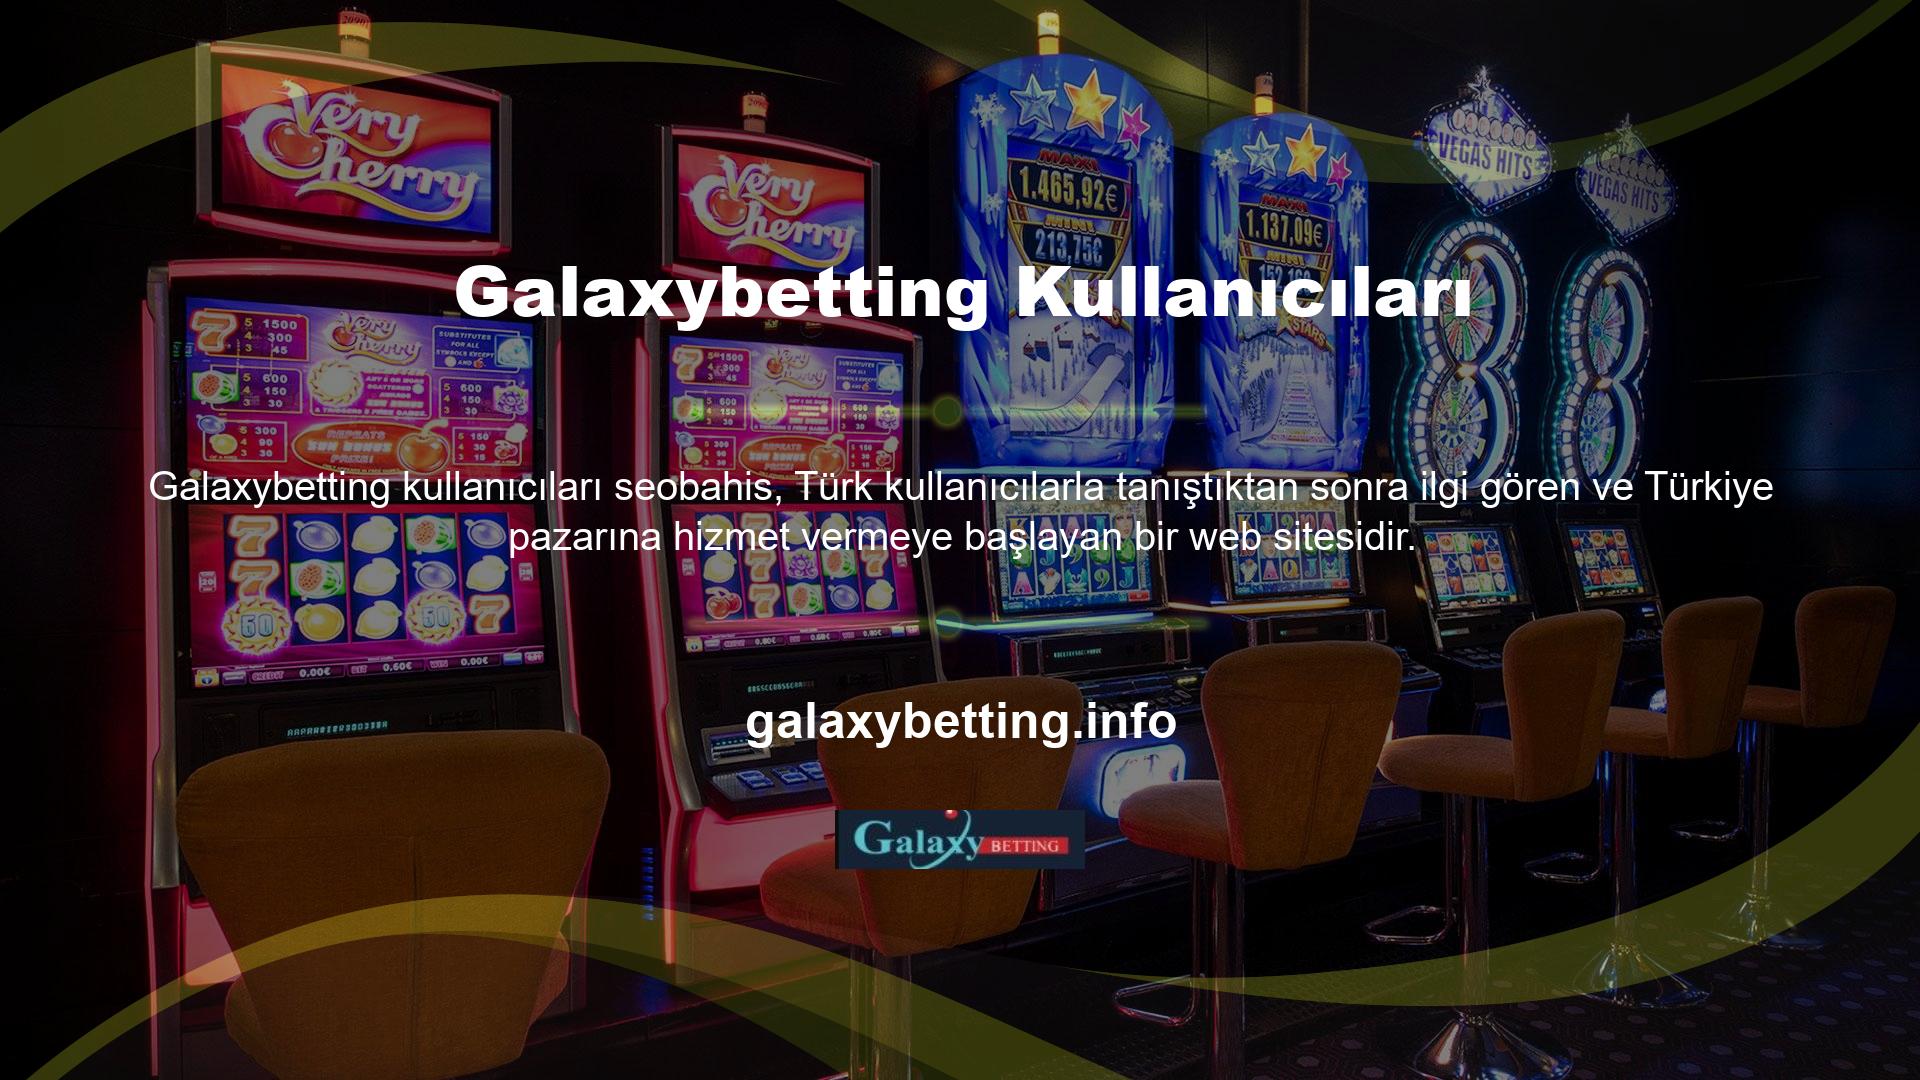 Yönetilen bir casino web sitesi, casinolar söz konusu olduğunda dikkatli, dengeli, şeffaf ve coşkuyla oynama lisansına sahip, sağlam, güvenilir bir web sitesidir